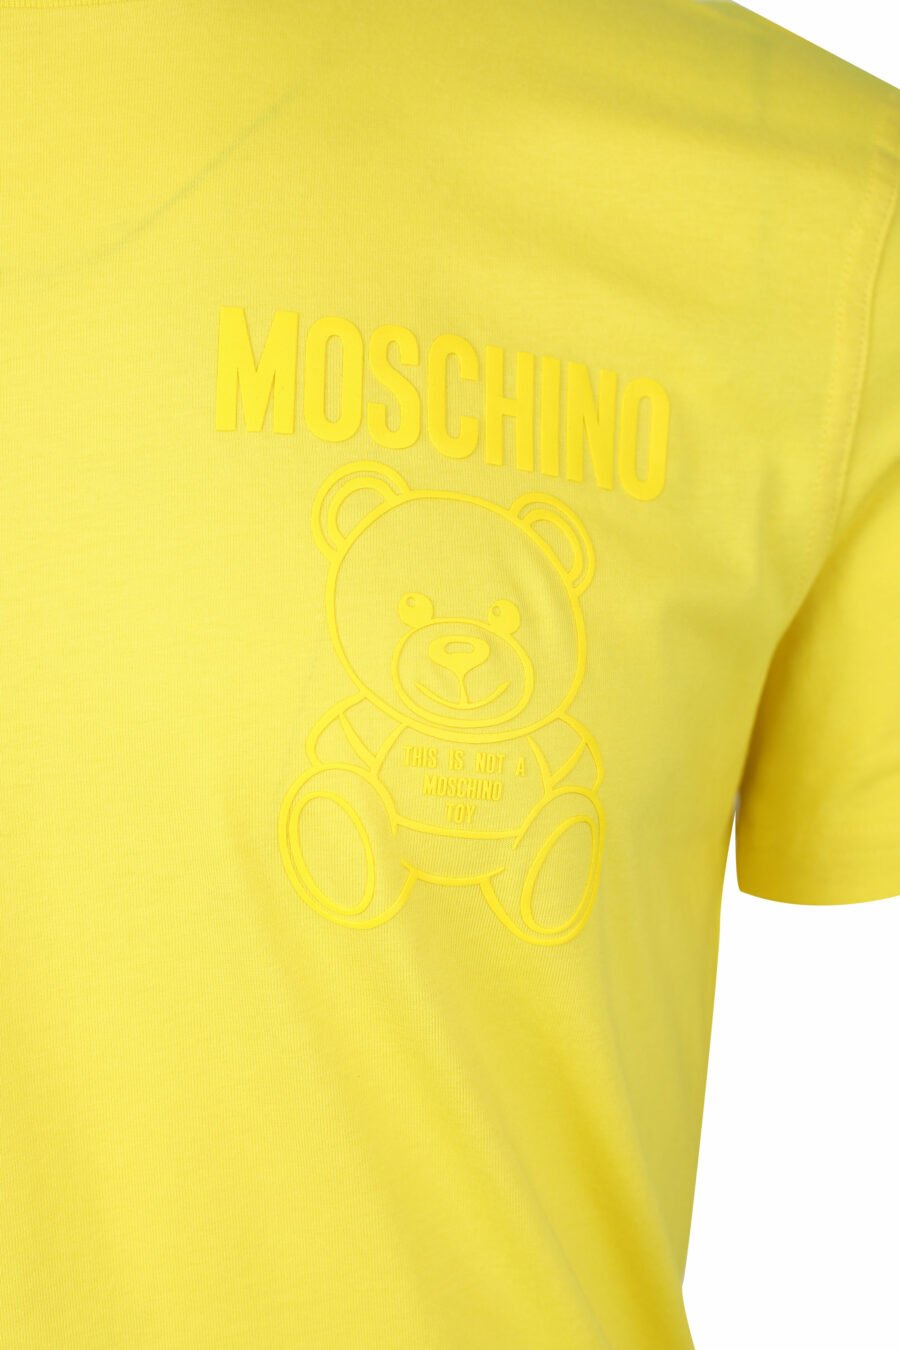 Gelbes T-Shirt mit einfarbigem Bären-Minilogo - IMG 1413